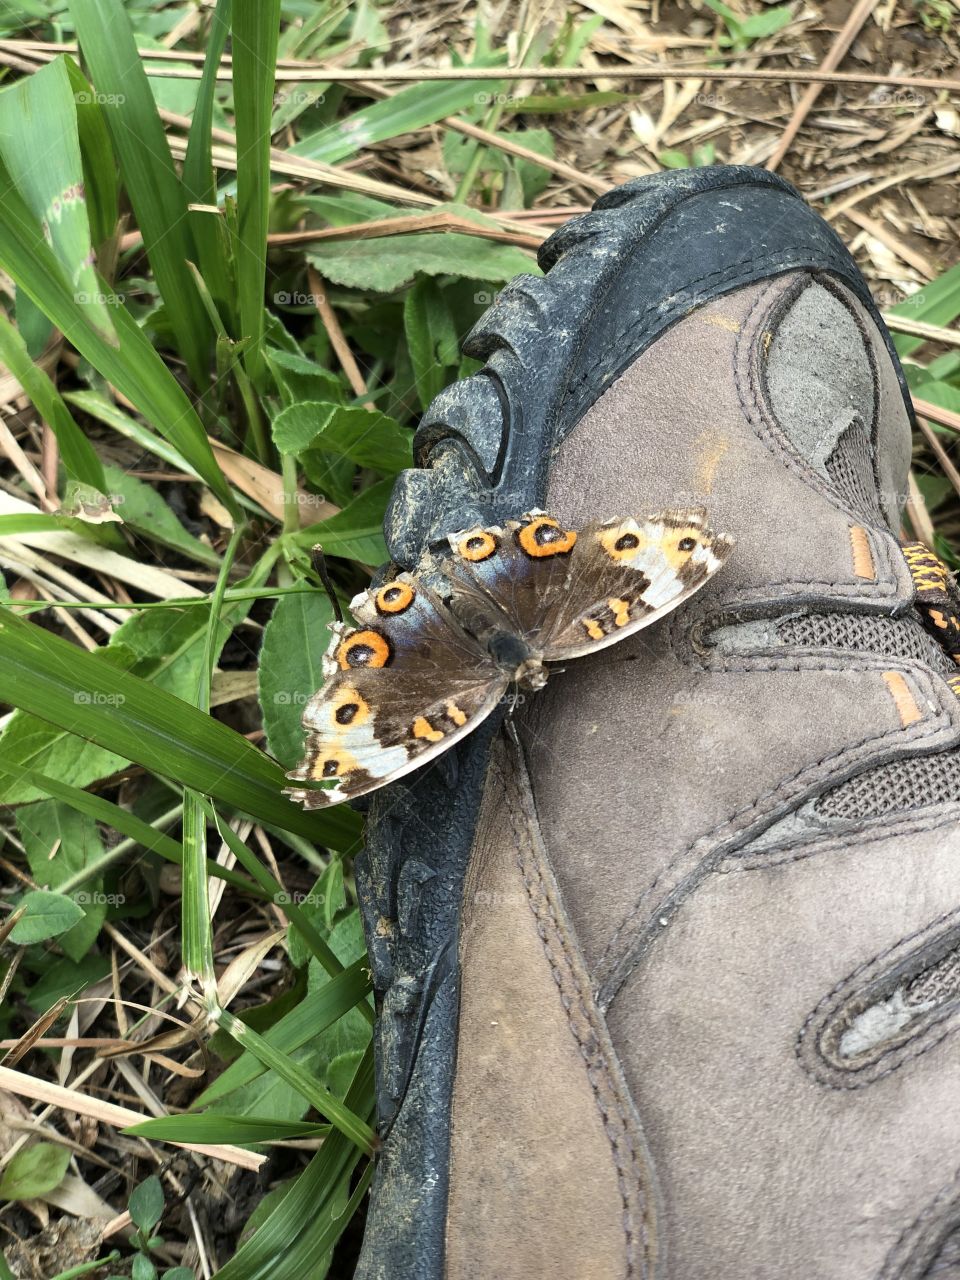 Butterfly on my shoe